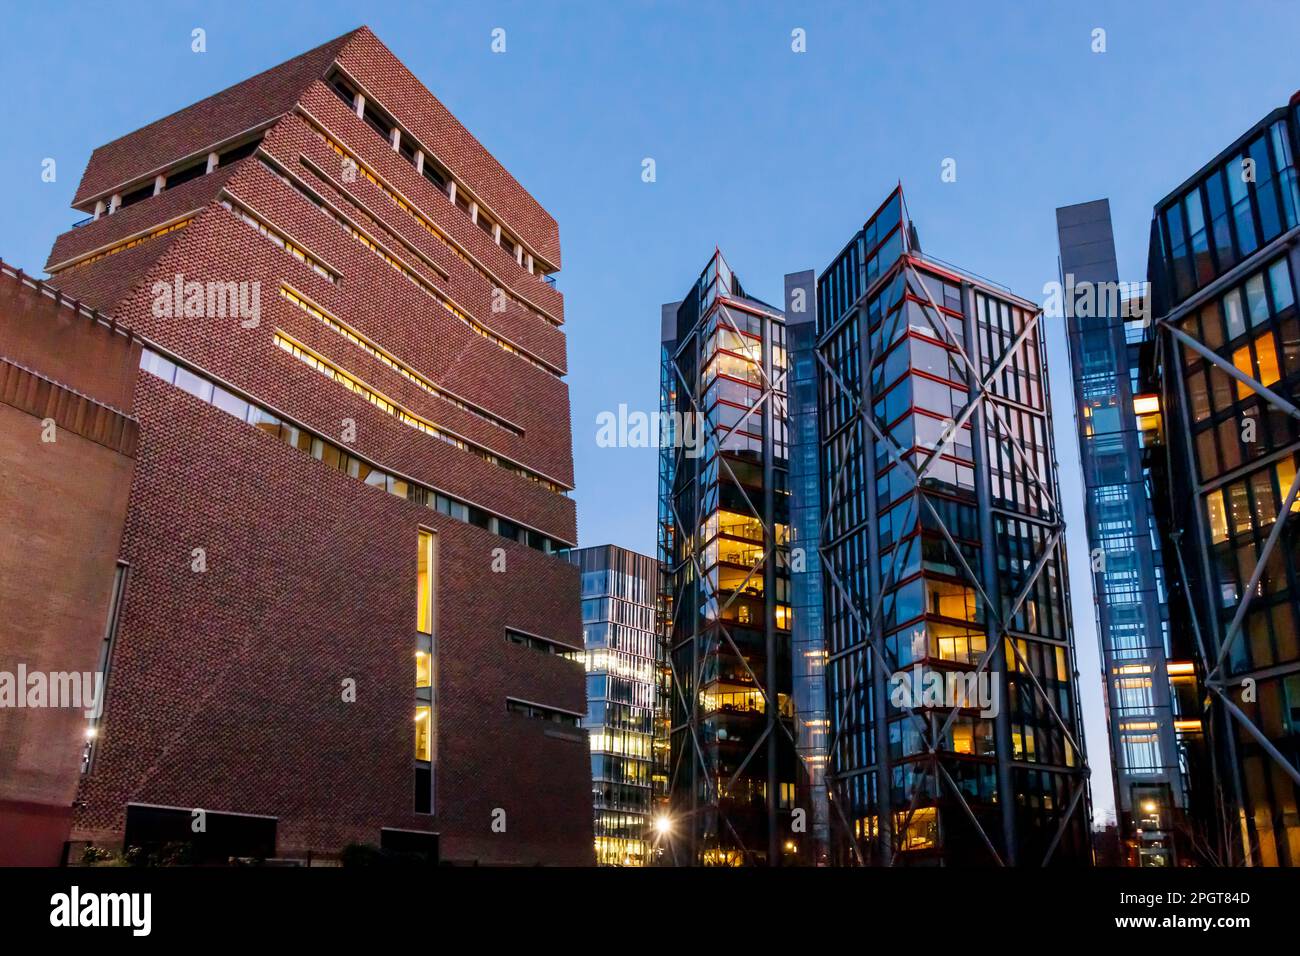 Edificio Blavatnik a Tate Modern, Londra, Regno Unito, sulla destra appartamenti di lusso che ha montato un tribunale contro la galleria per l'invasione della privacy Foto Stock